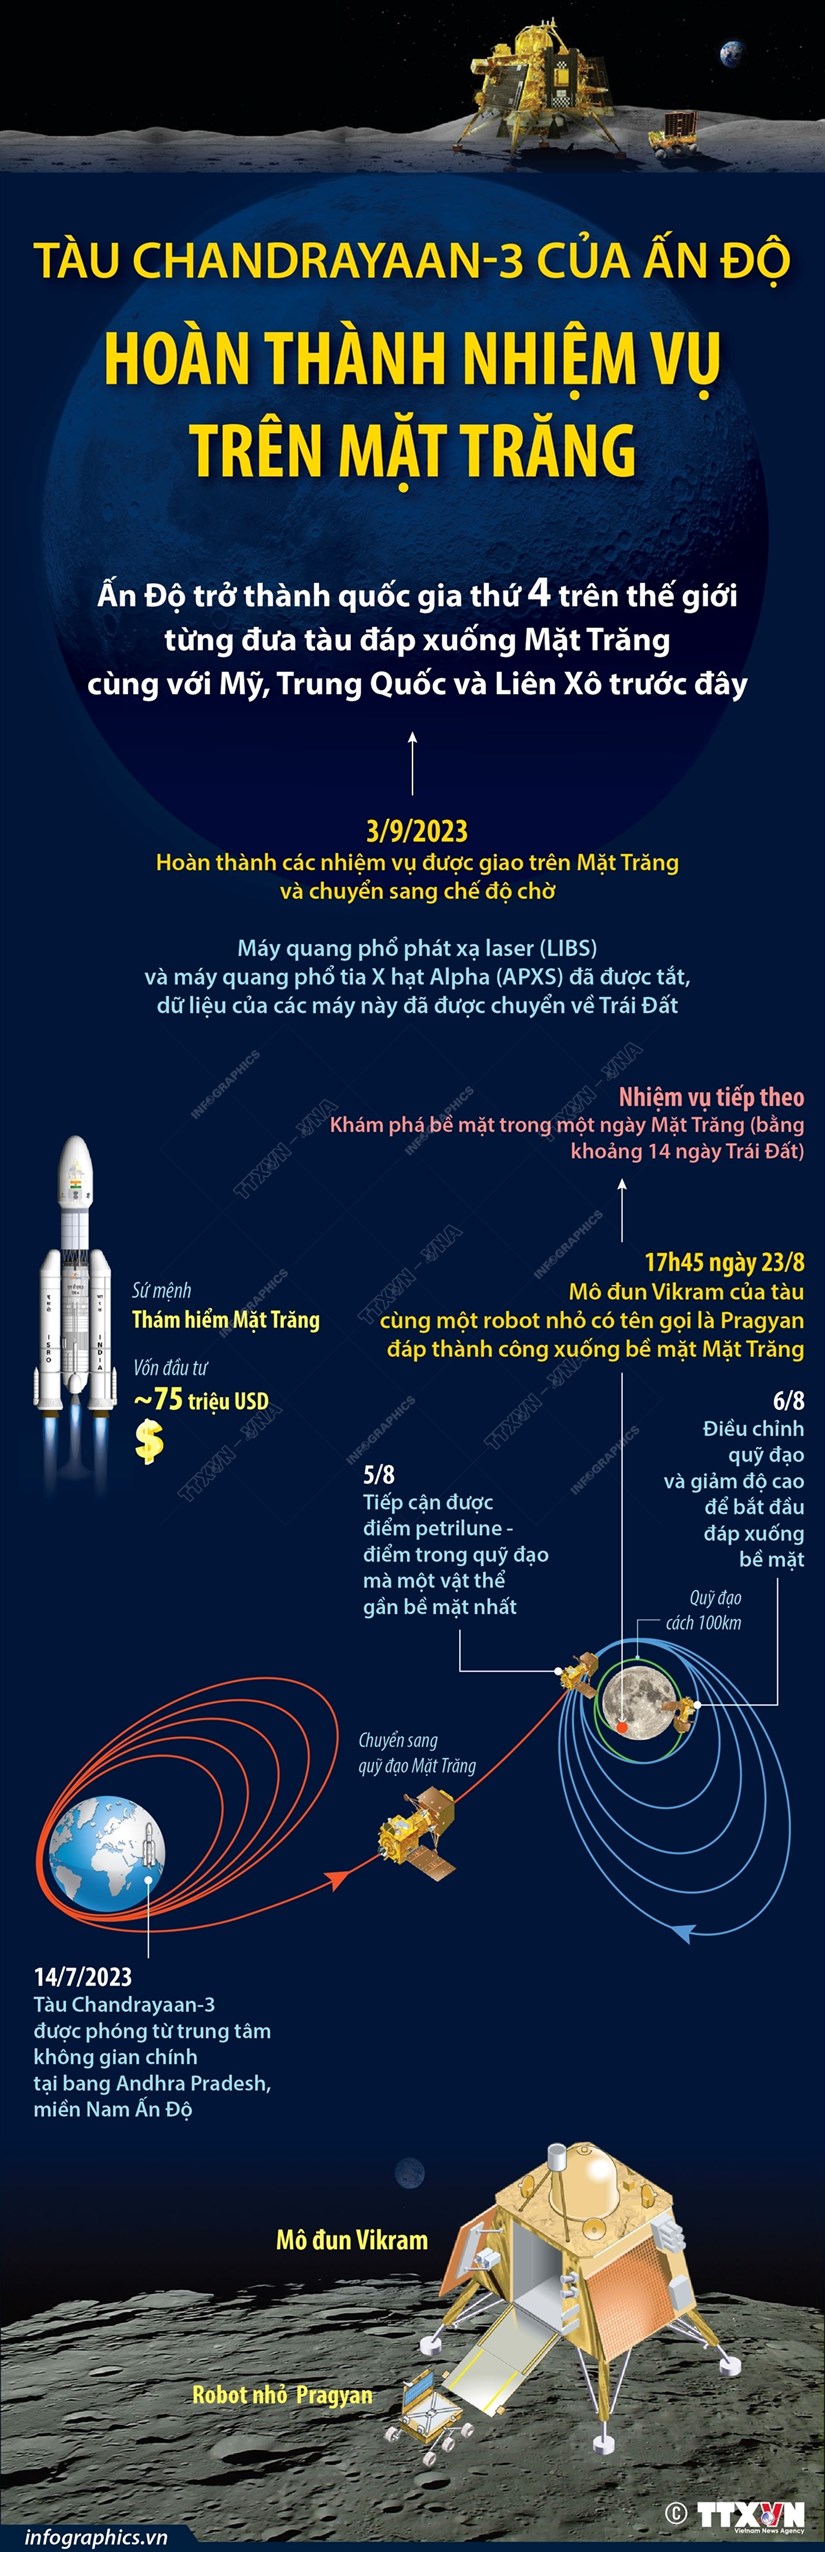 [Infographics] Tàu Chandrayaan-3 hoàn thành nhiệm vụ trên Mặt Trăng - ảnh 1